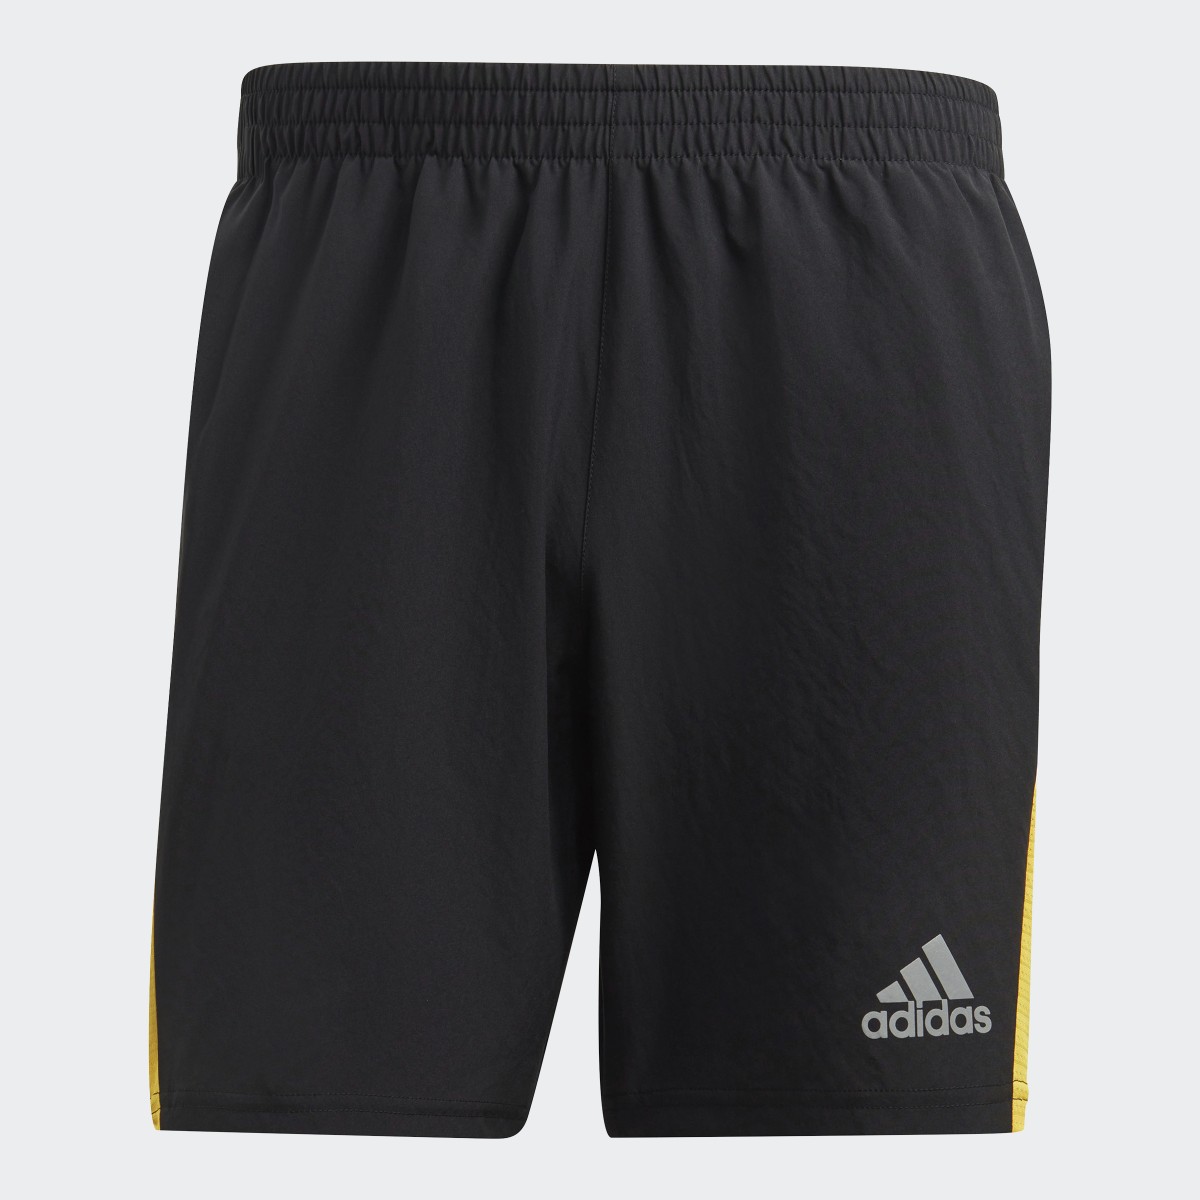 Adidas Own the Run Shorts. 4